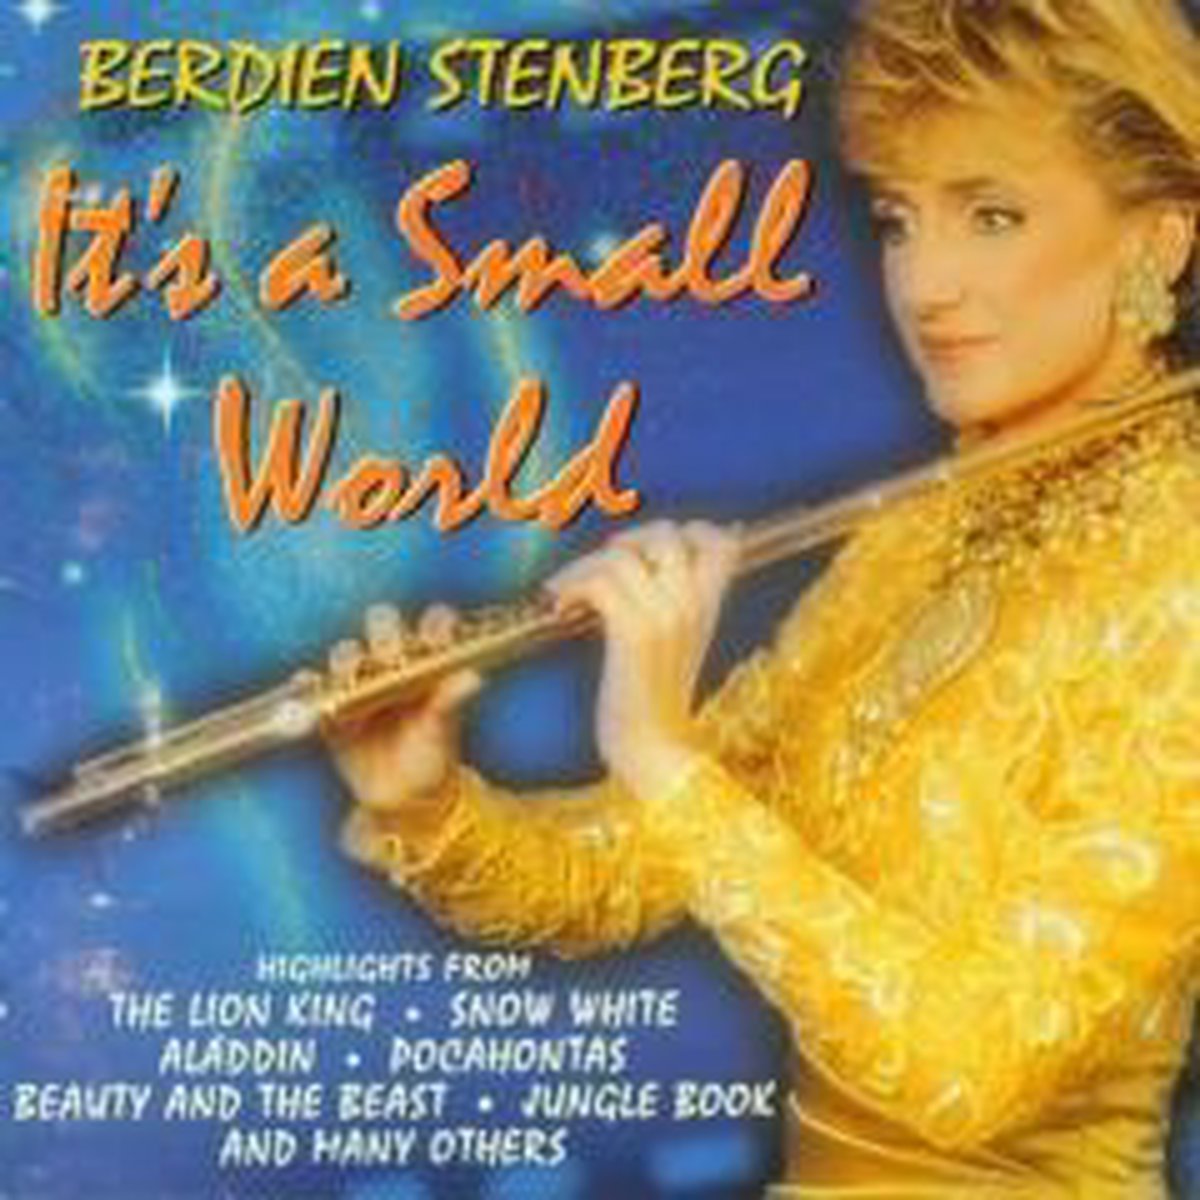 IT'S A SMALL WORLD - BERDIEN STENBERG - Berdien Stenberg